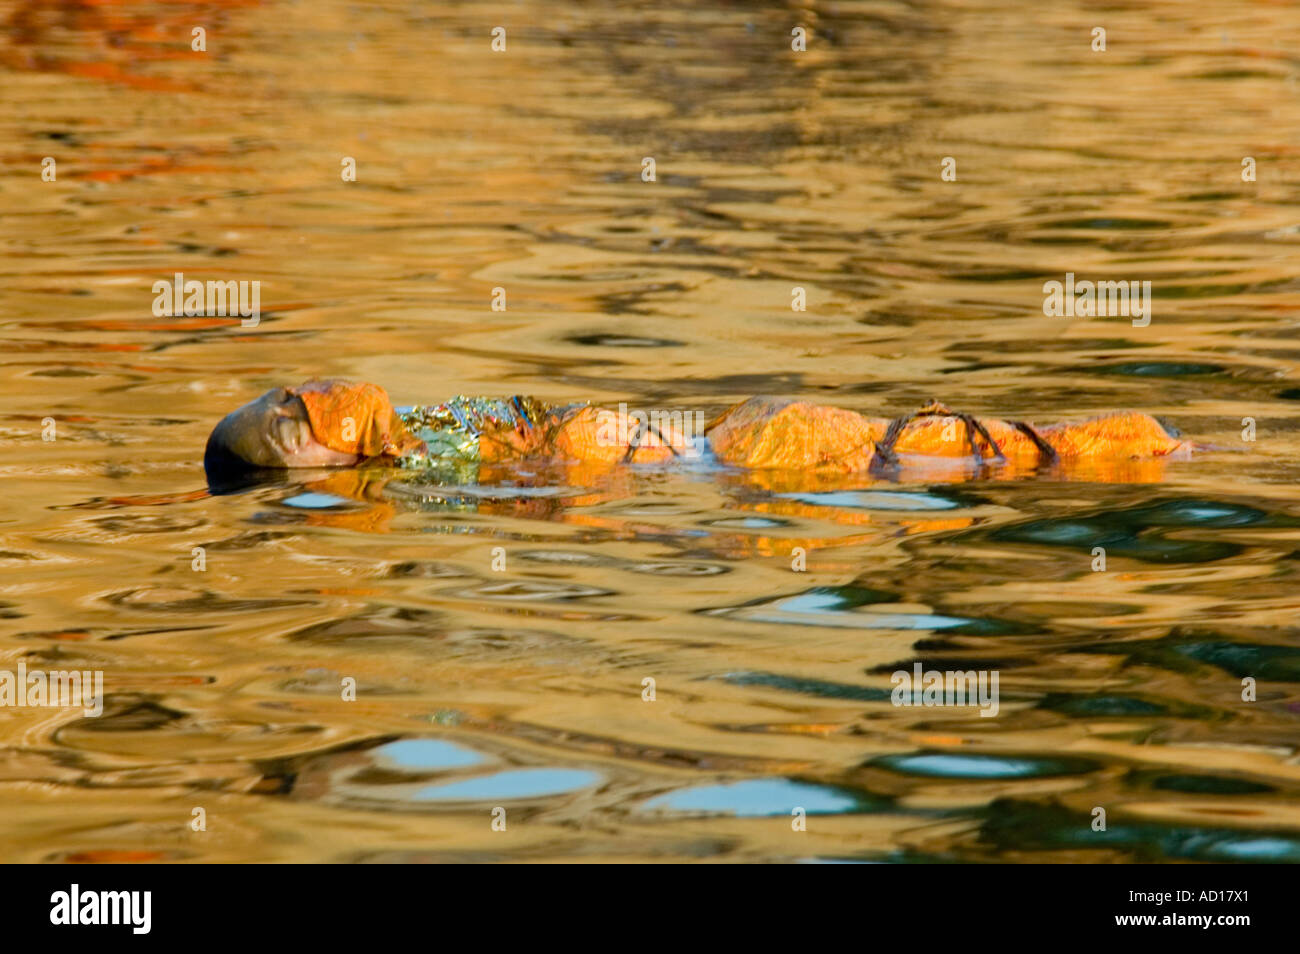 Vue horizontale d'un cadavre enveloppé d'orange de la fleuve Ganges. Banque D'Images